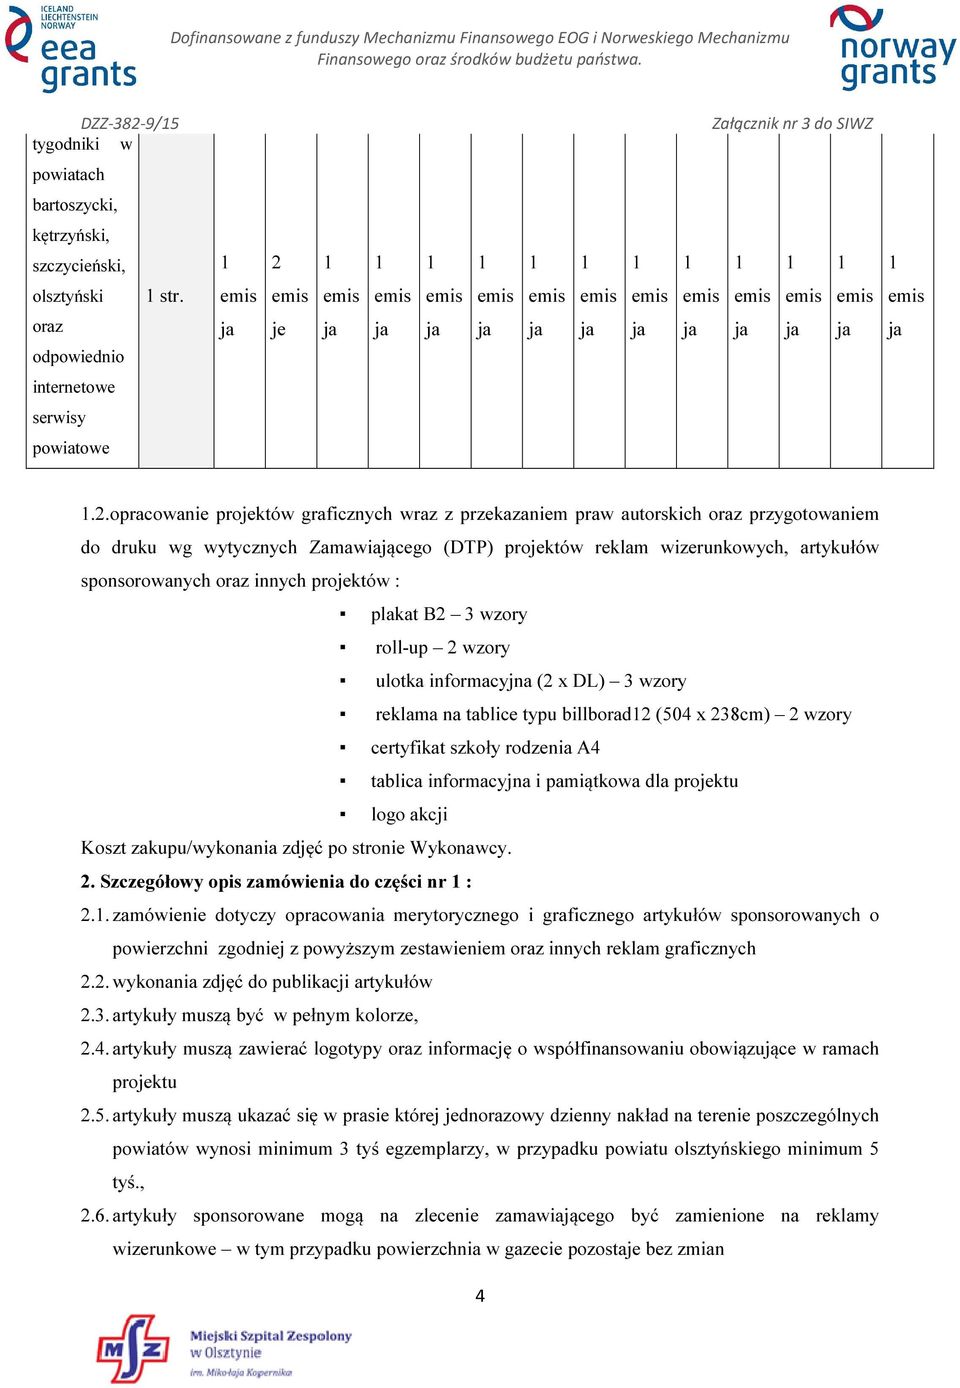 proktów : plakat B 3 wzory roll-up wzory ulotka informacyjna ( x DL) 3 wzory reklama na tablice typu billborad (504 x 38cm) wzory certyfikat szkoły rodzenia A4 tablica informacyjna i pamiątkowa dla